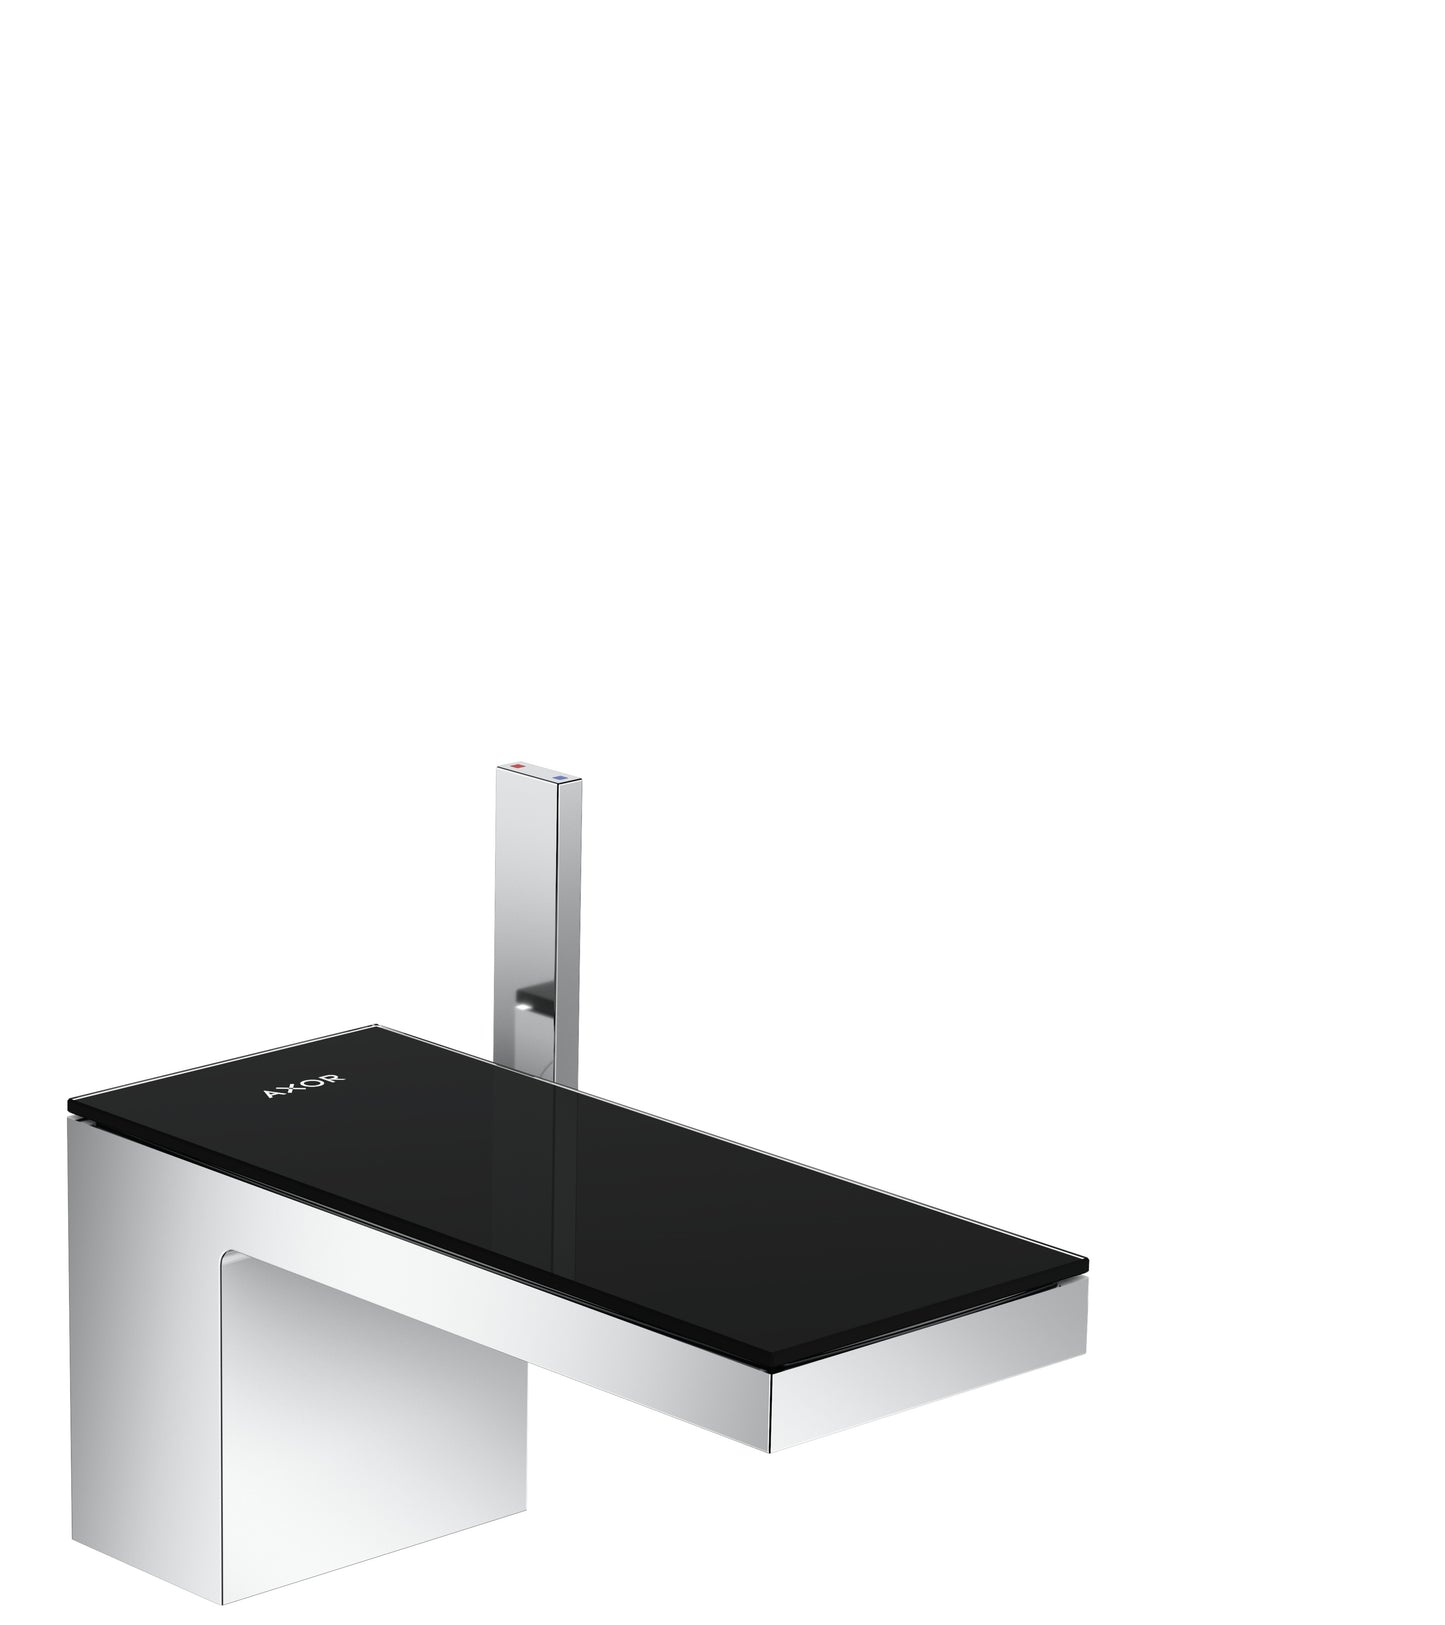 AXOR 47010601 Chrome / Black Glass MyEdition Avantgarde Single Hole Bathroom Faucet 1.2 GPM